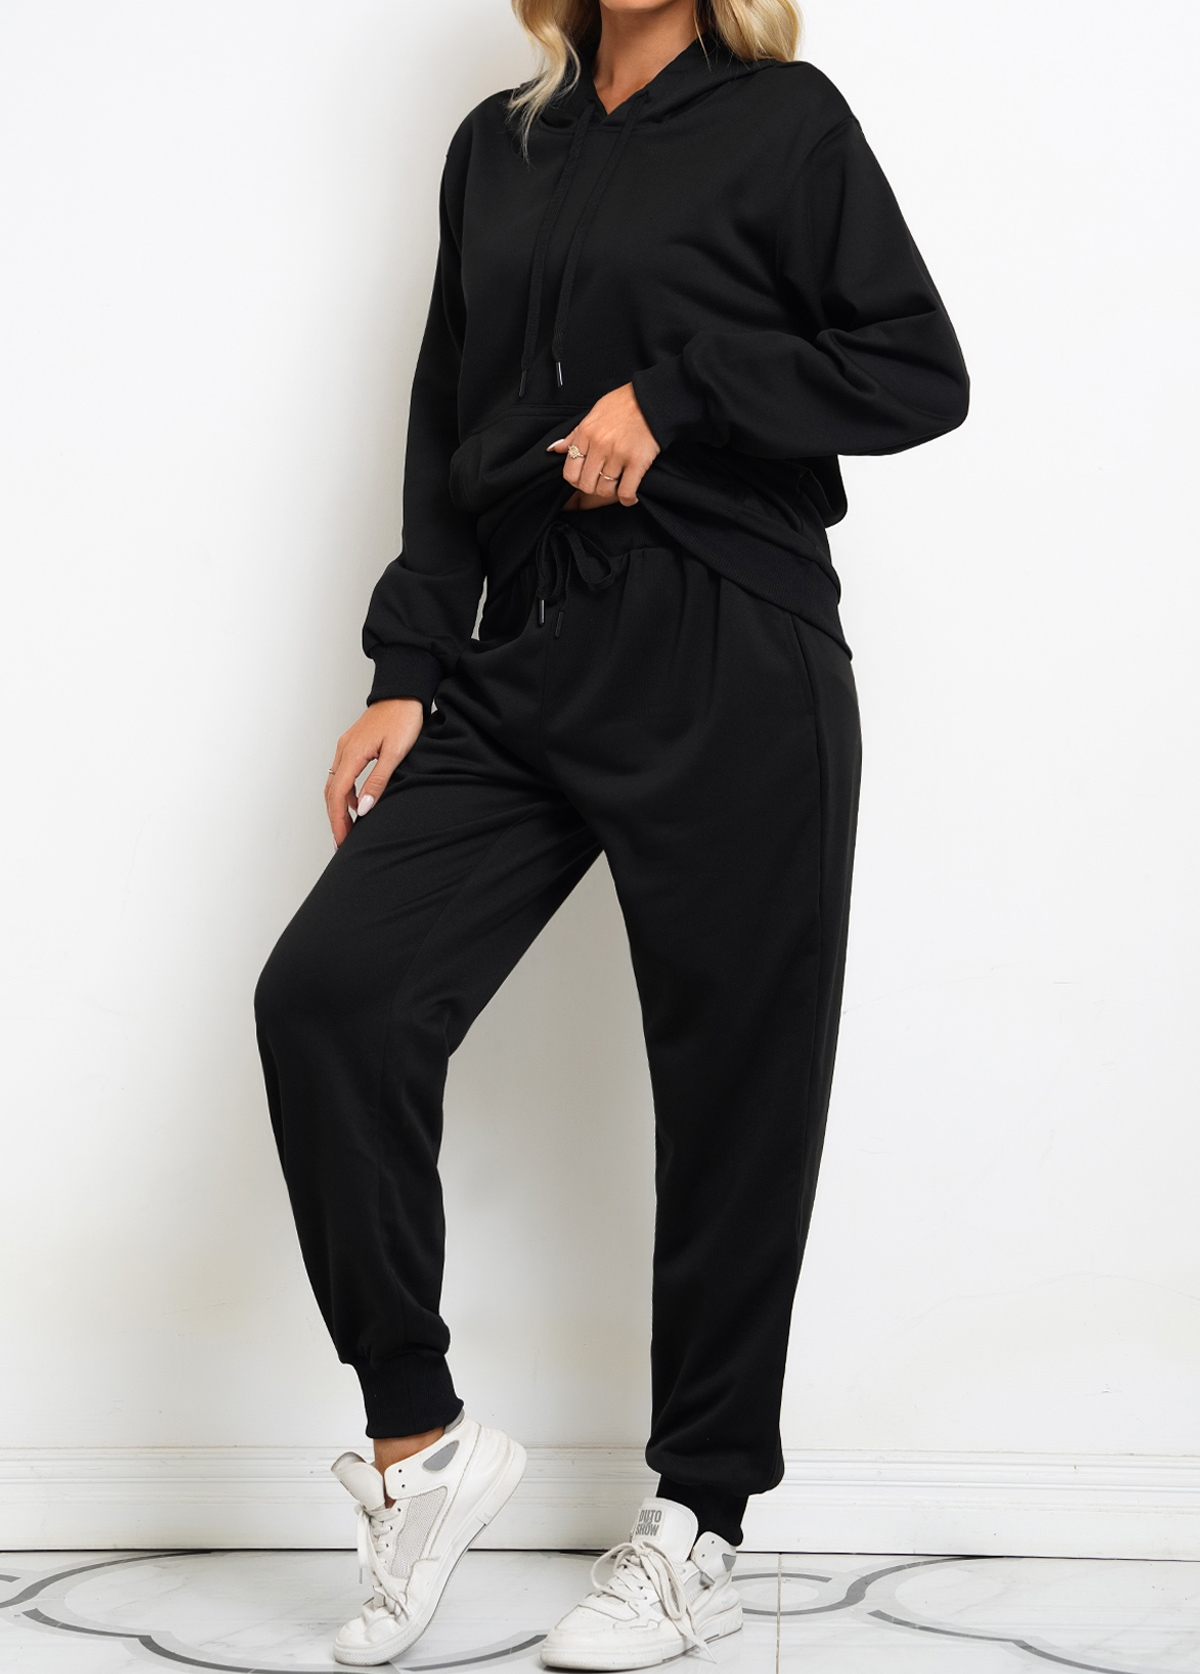 Black Long Sleeve Drawstring Sweatsuit Set